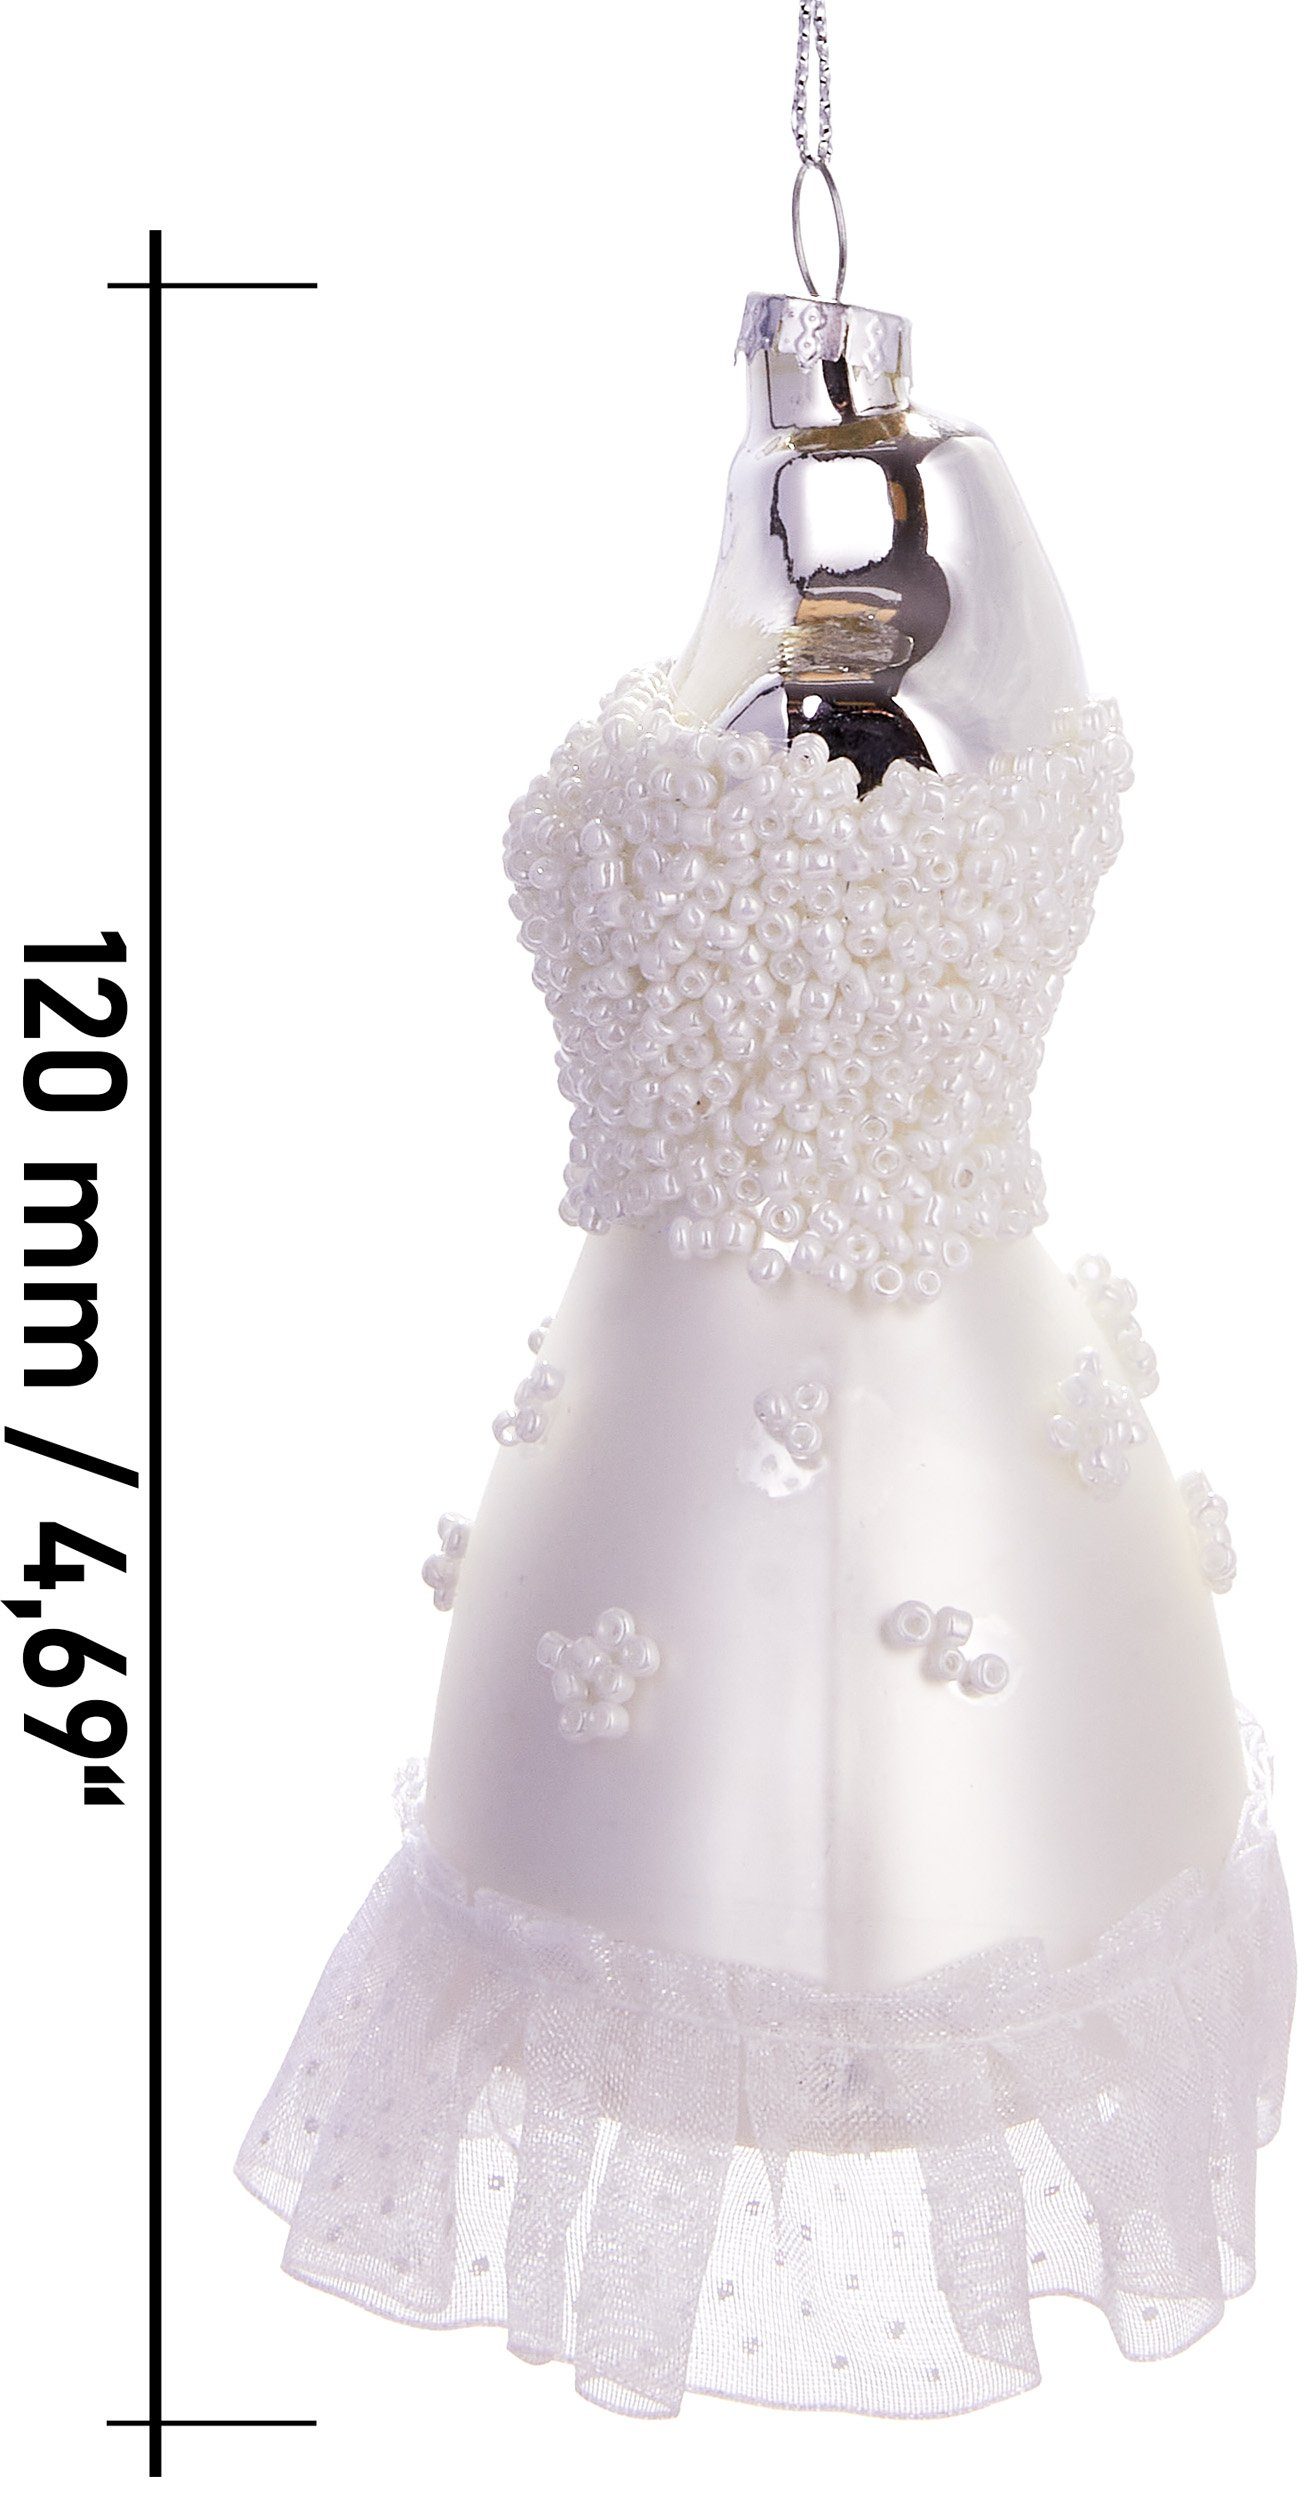 aus Unikat mundgeblasenes Weihnachtsdekoration Brautkleid, 12 elegante BRUBAKER Weihnachtskugel - Glas, Christbaumschmuck cm Weißes Handbemalte